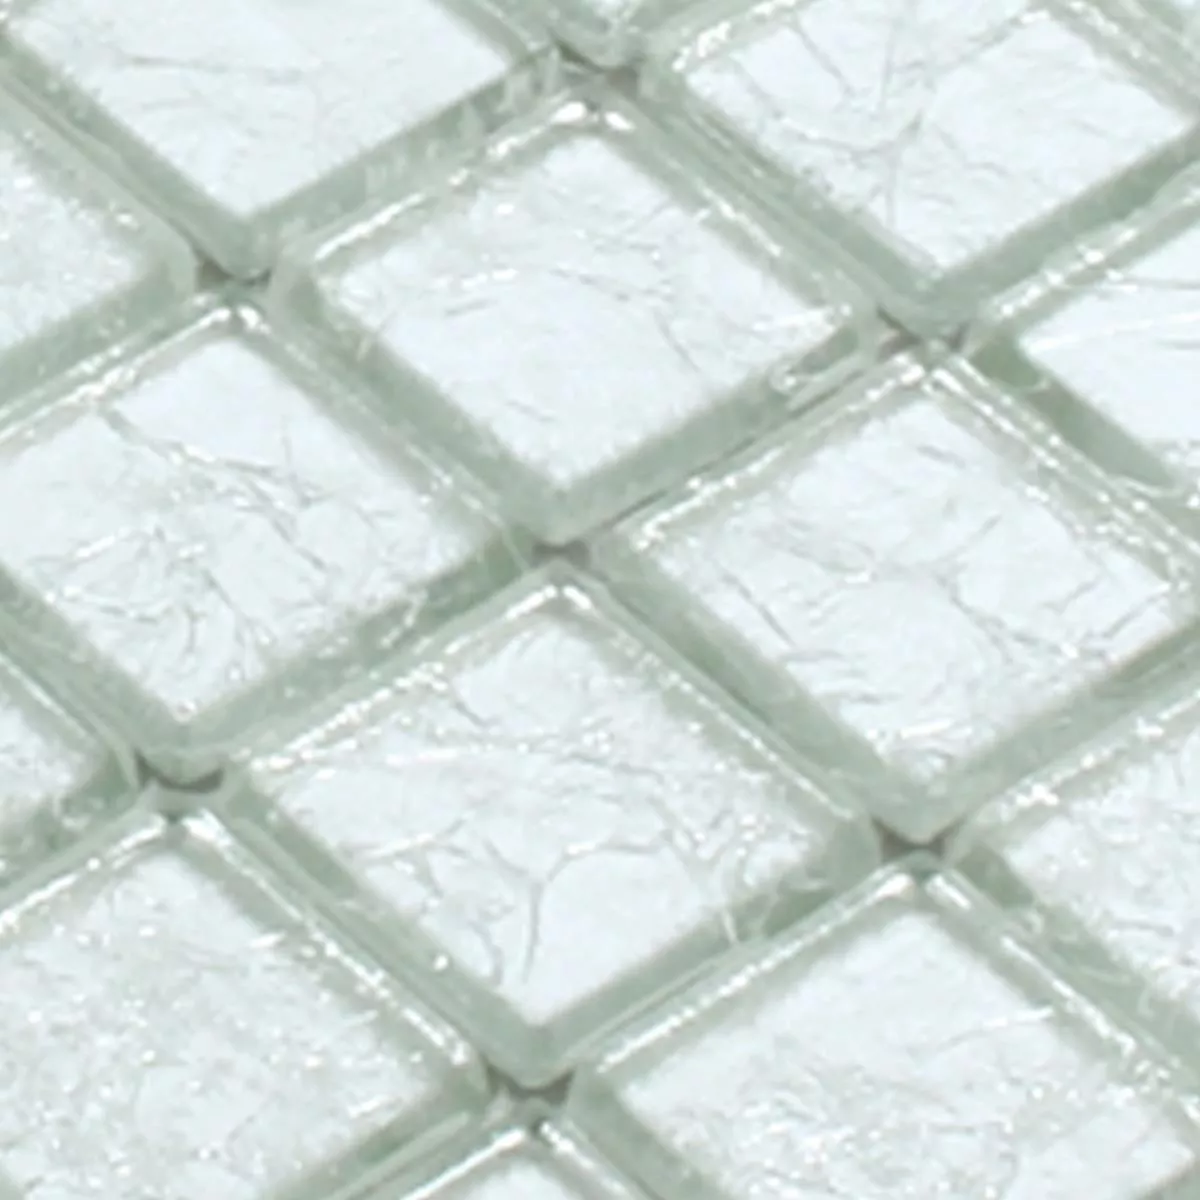 Muster von Mosaikfliesen Glas Lucca Silber 23x23x4mm